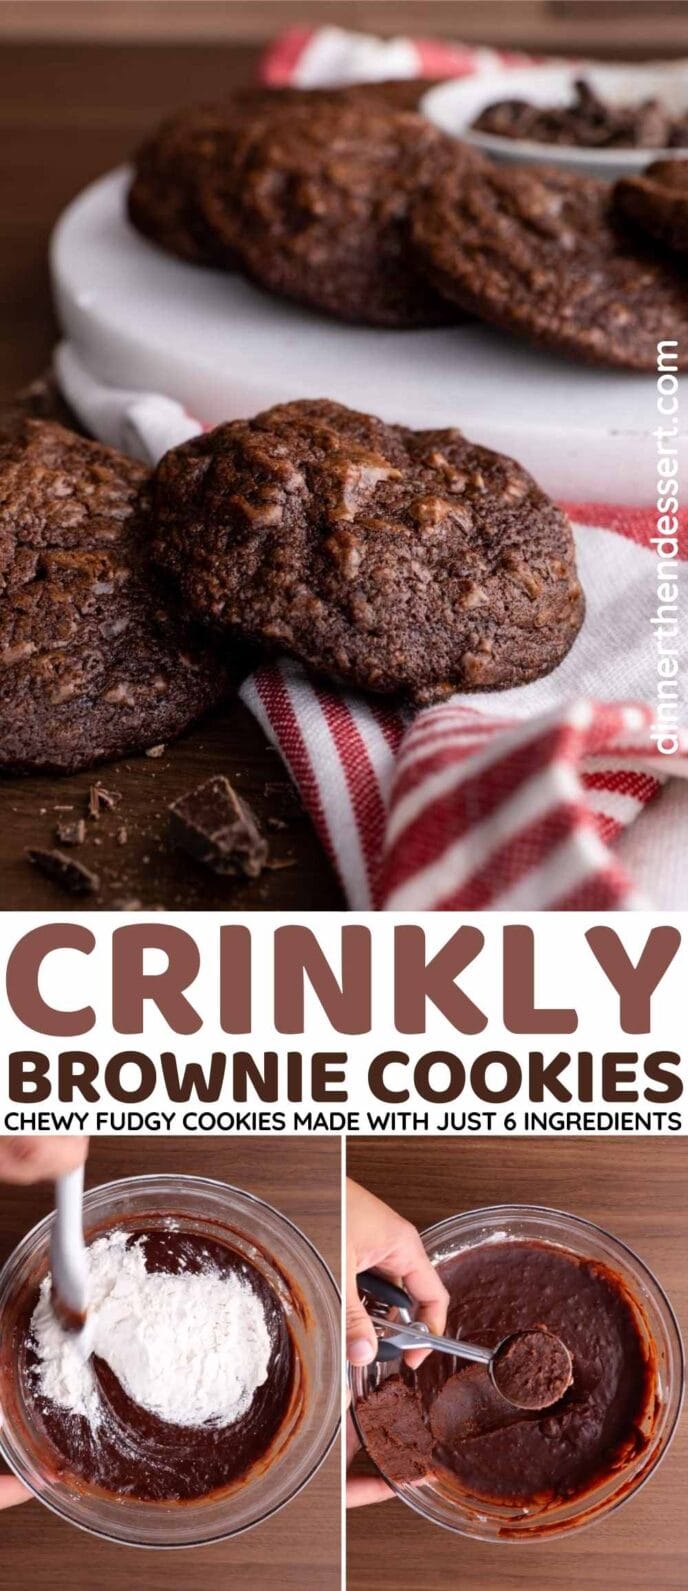 Crinkly Brownie Cookies Collage